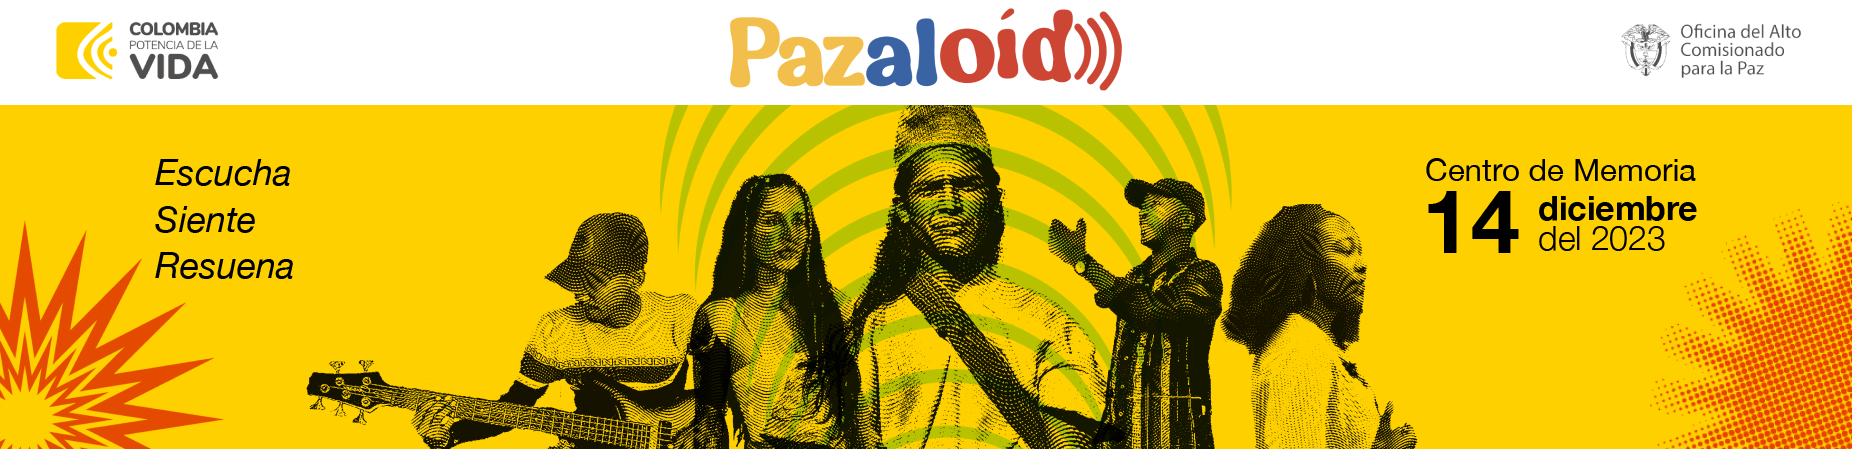 Banner Pazaloído